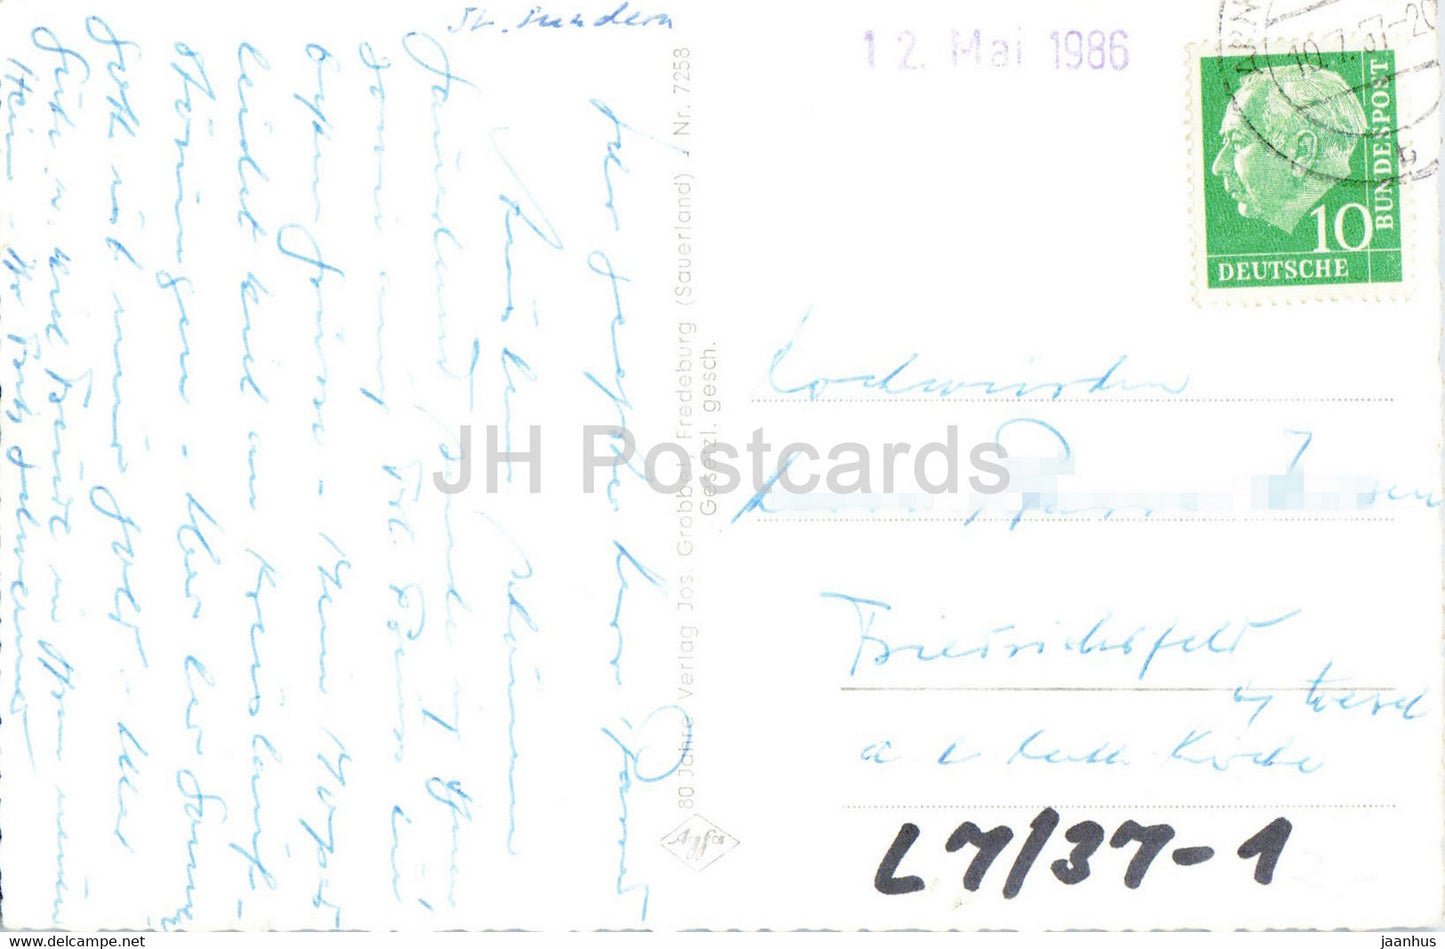 Sorpedamm mit Blick auf Langscheid - Sauerland - alte Postkarte - 1957 - Deutschland - gebraucht